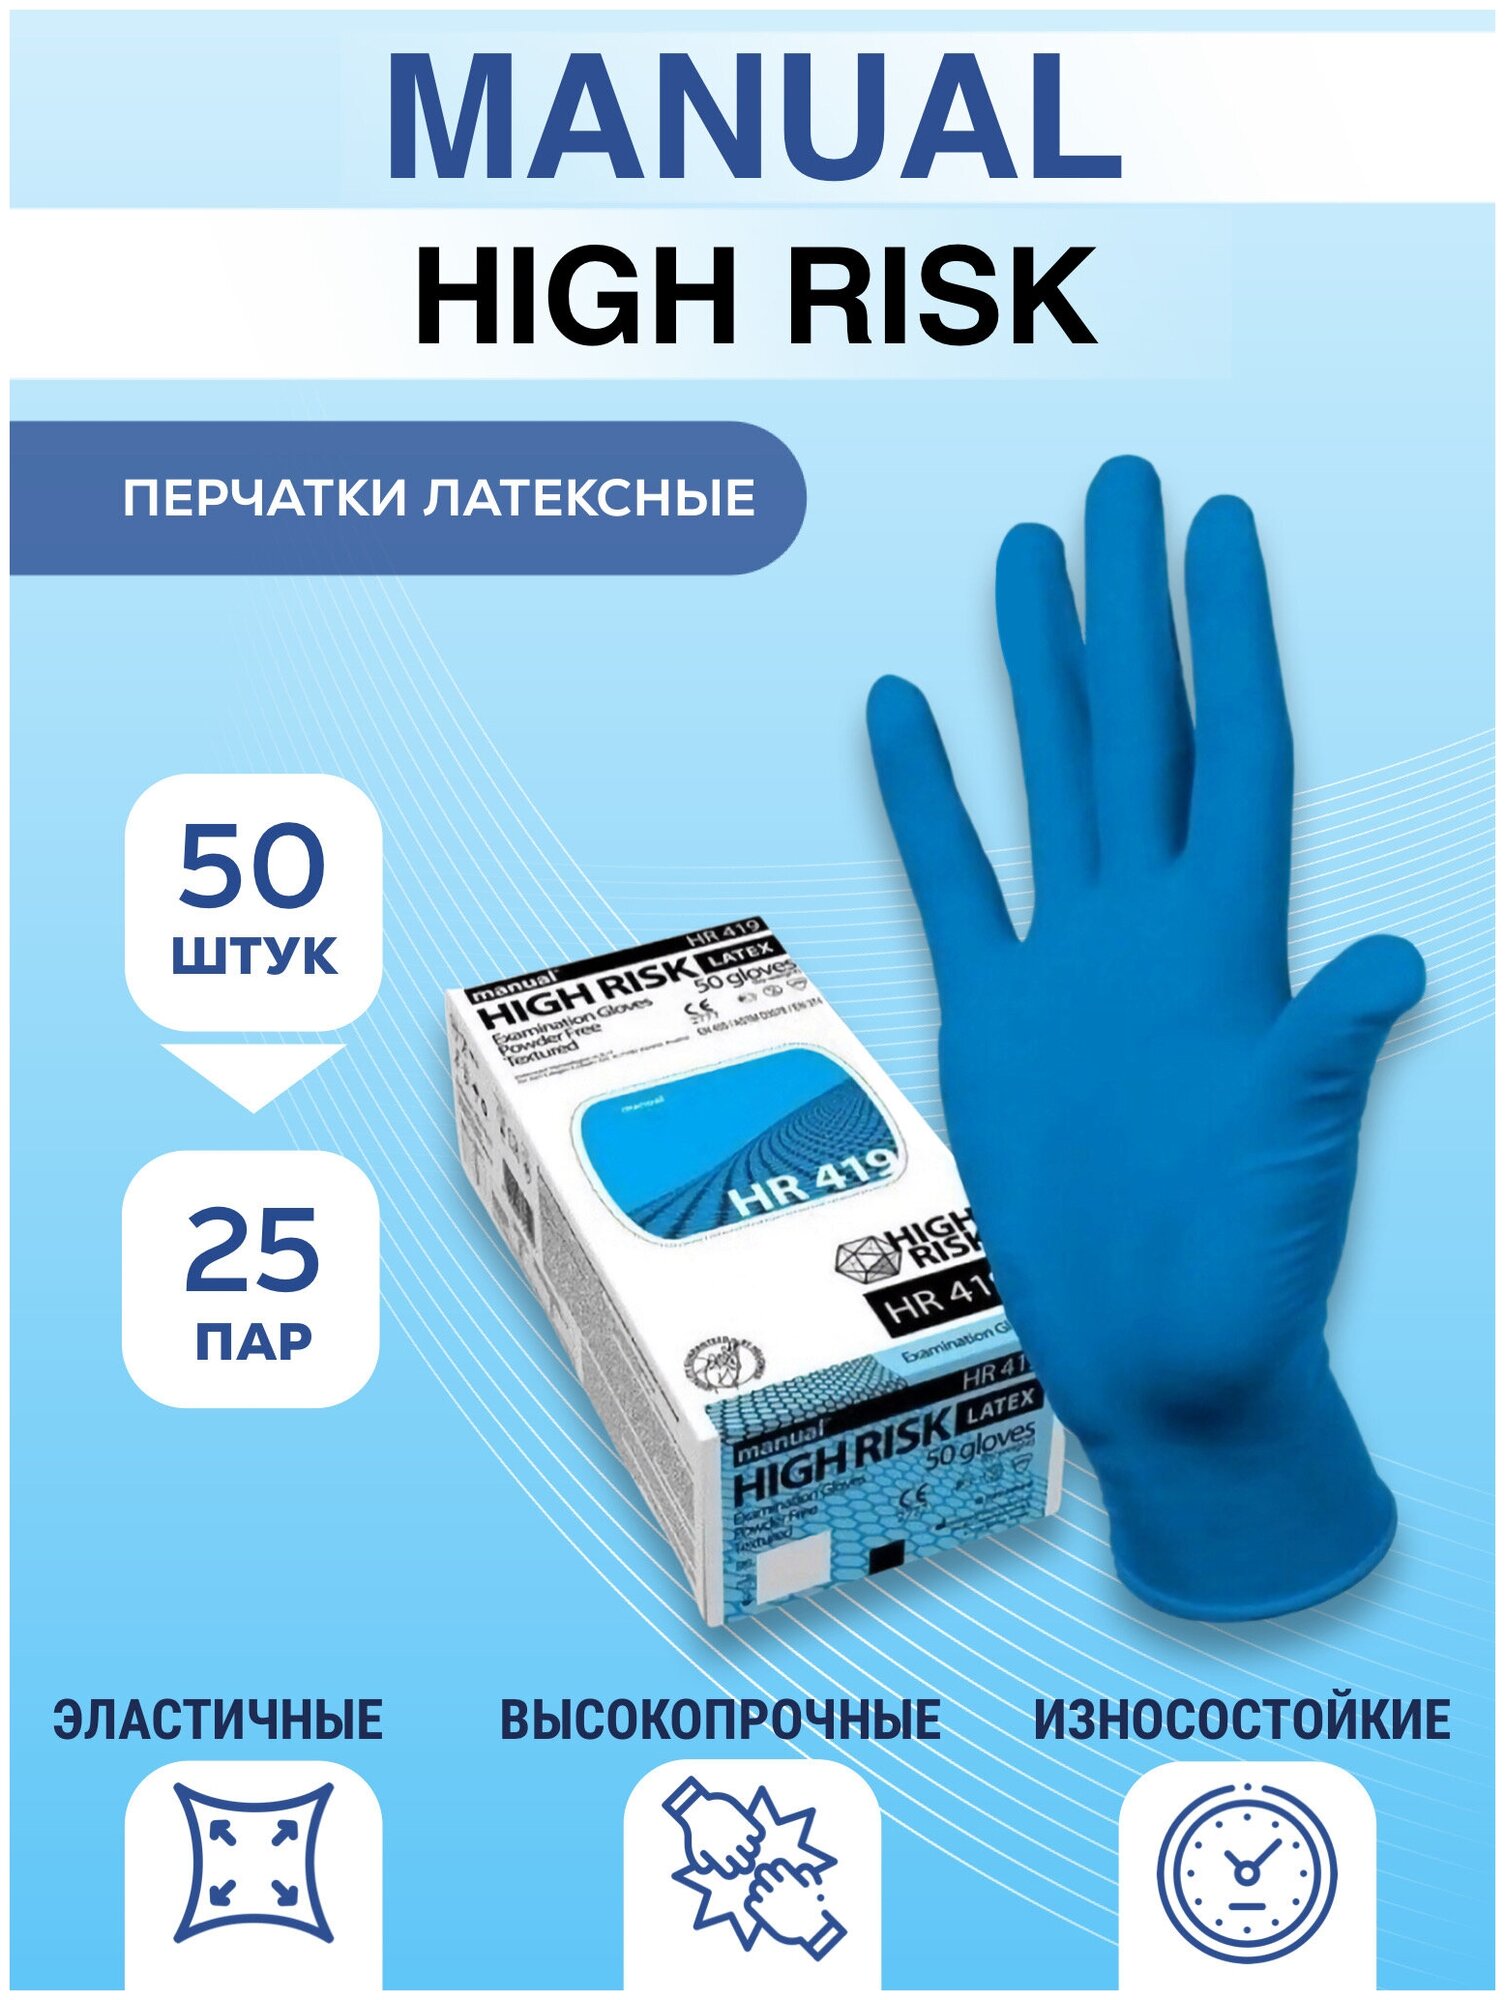 Перчатки одноразовые Manual High Risk Optey (50шт Размер: М)